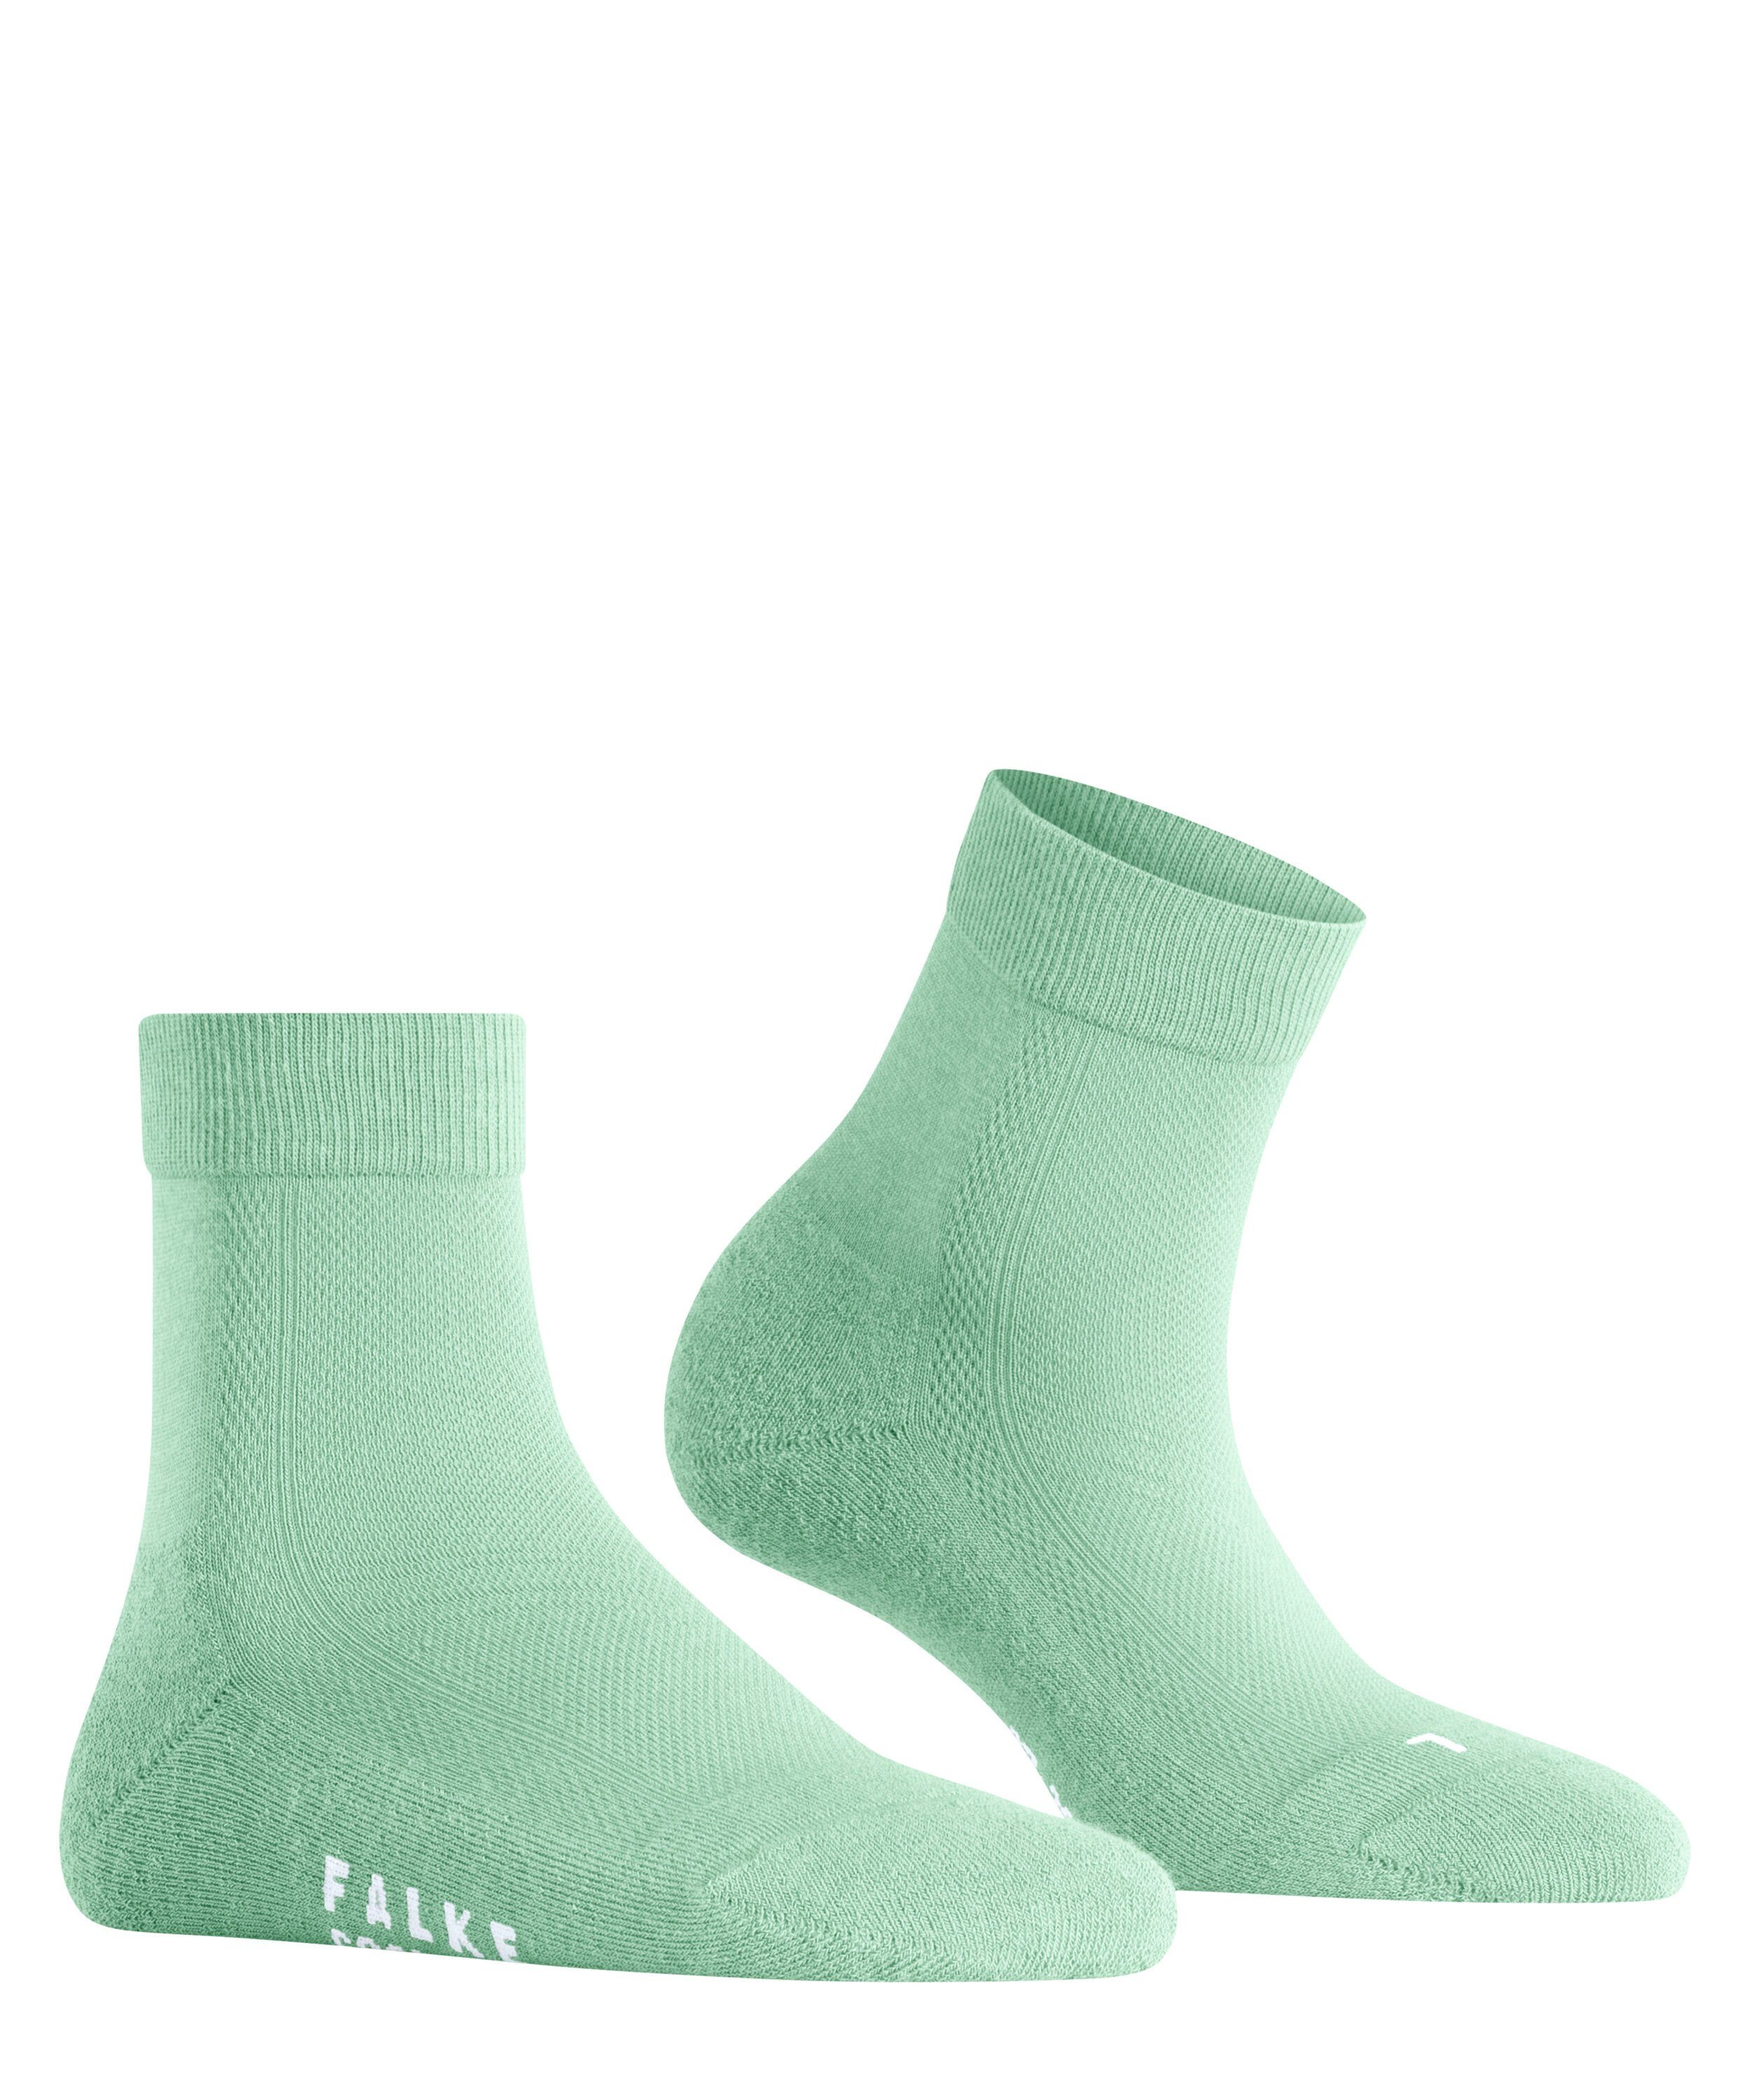 FALKE (7188) Kick Cool jade Socken (1-Paar)